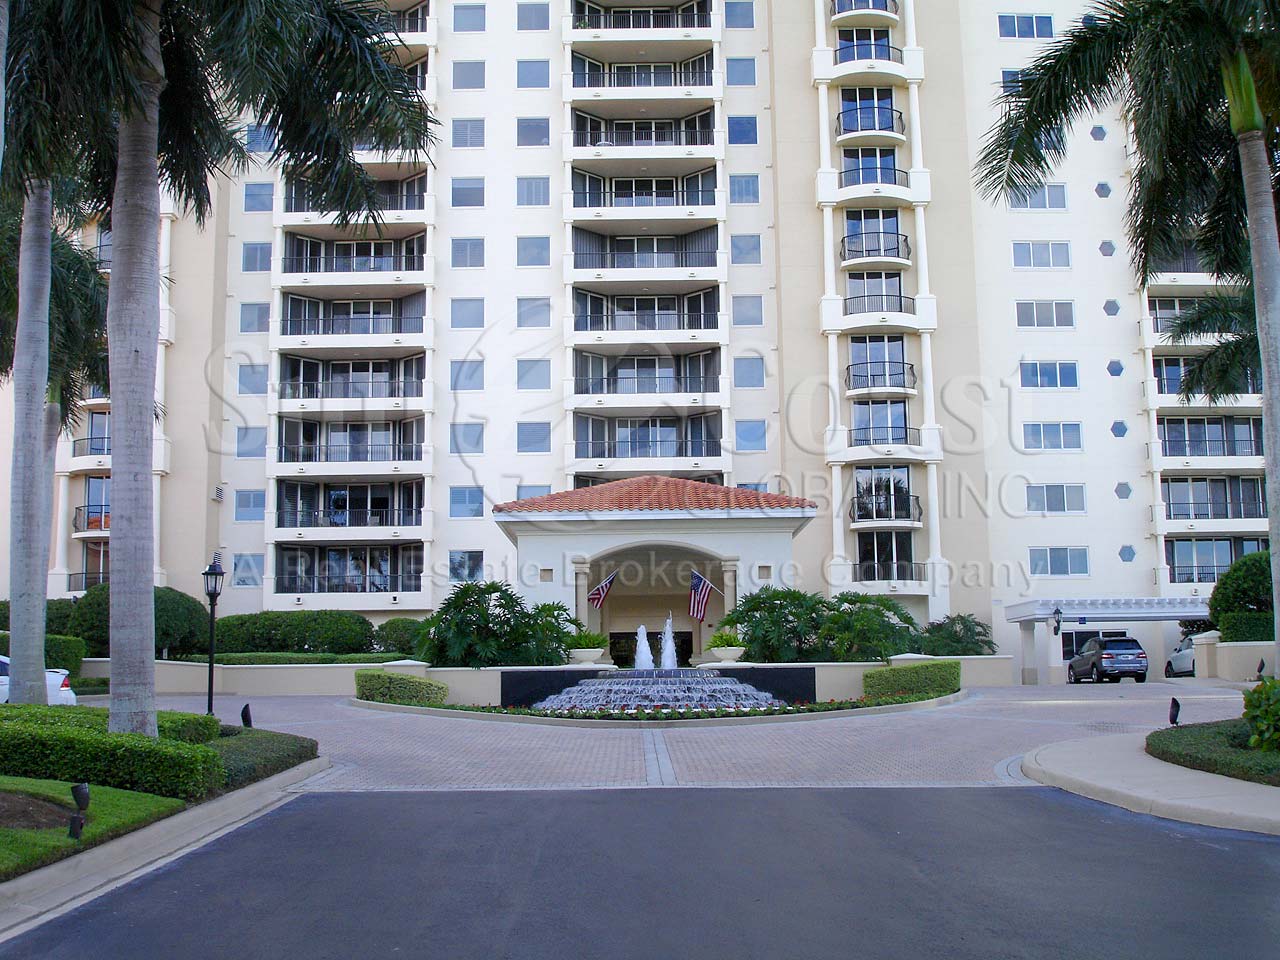 Marbella Condominium Building